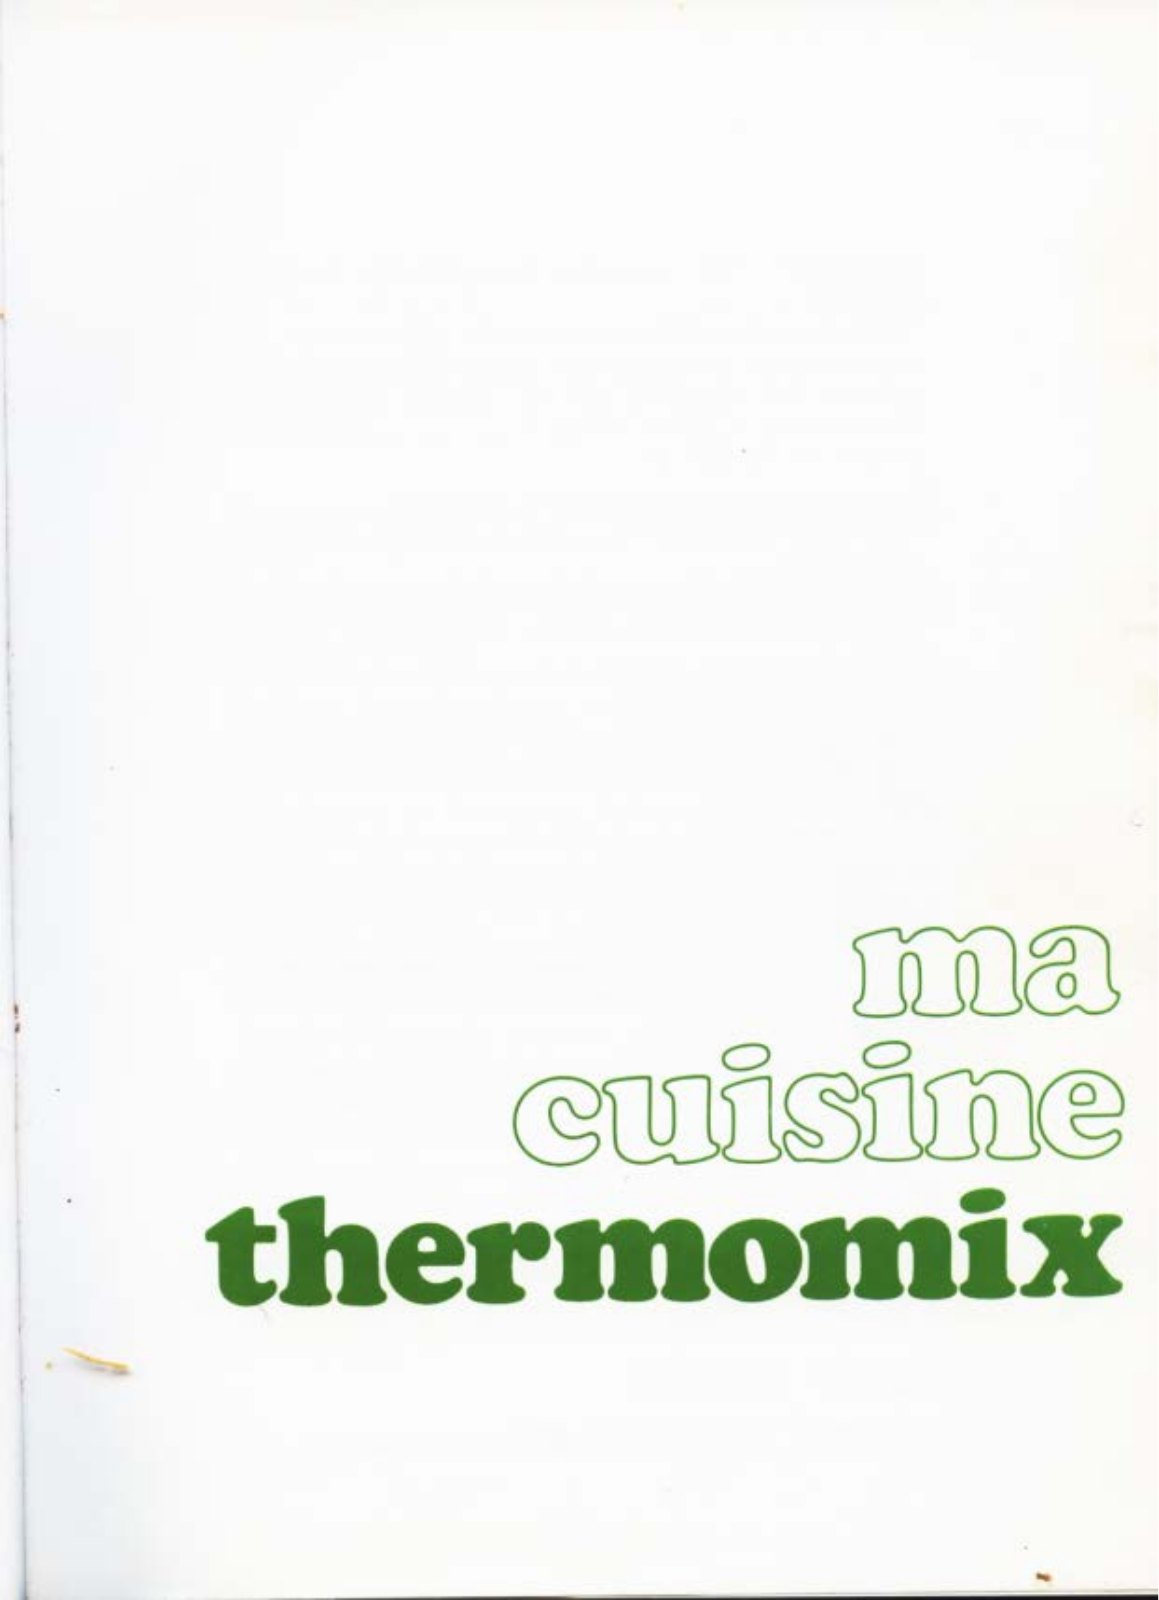 Vorwerk Thermomix 3300 User Manual